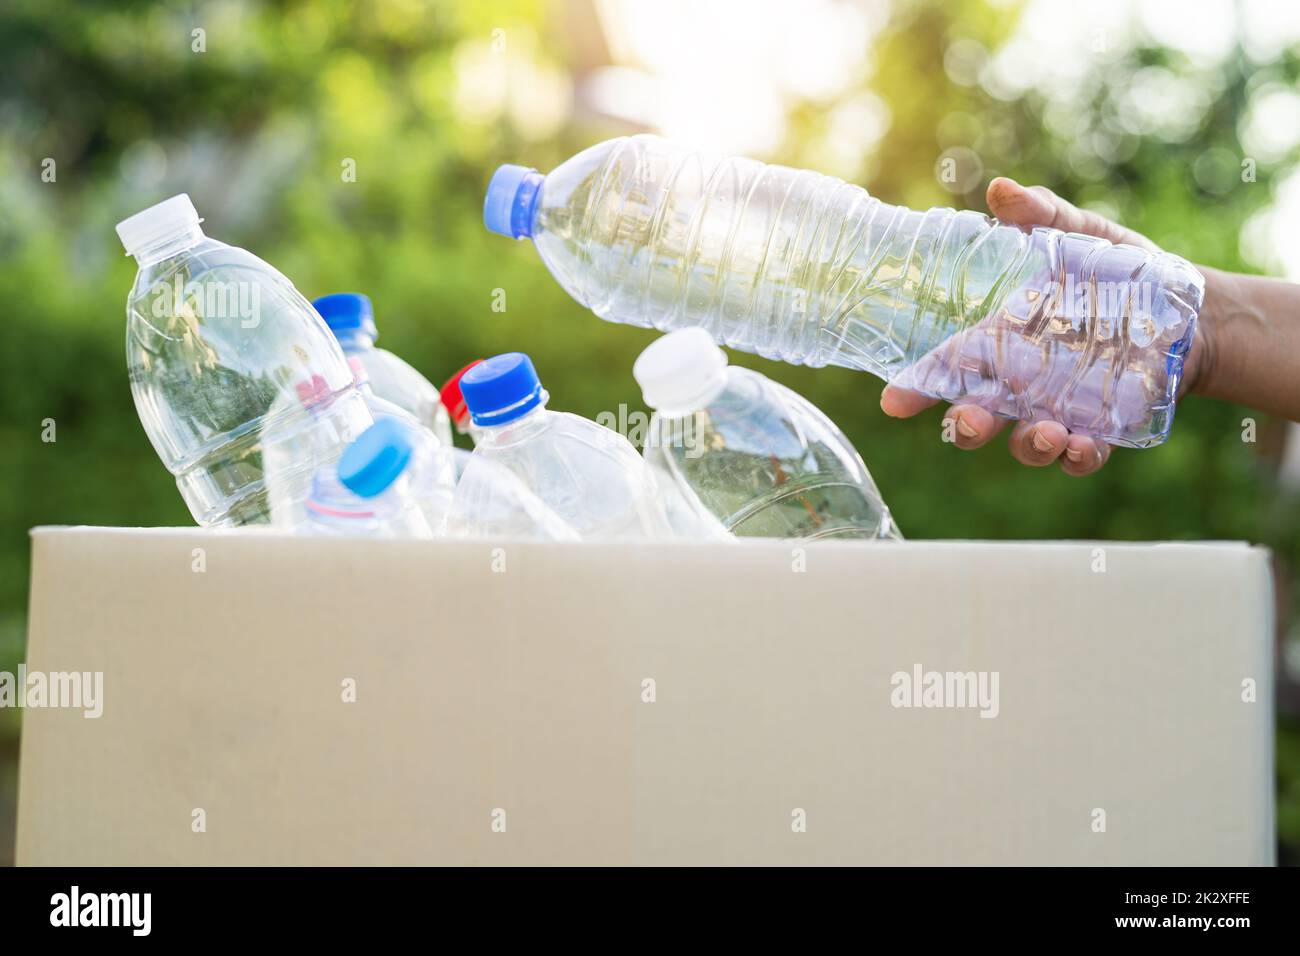 Asiatische Frau Freiwillige tragen Wasser Plastikflaschen in Müllkiste Müll im Park, recyceln Abfall Umwelt Ökologie Konzept. Stockfoto